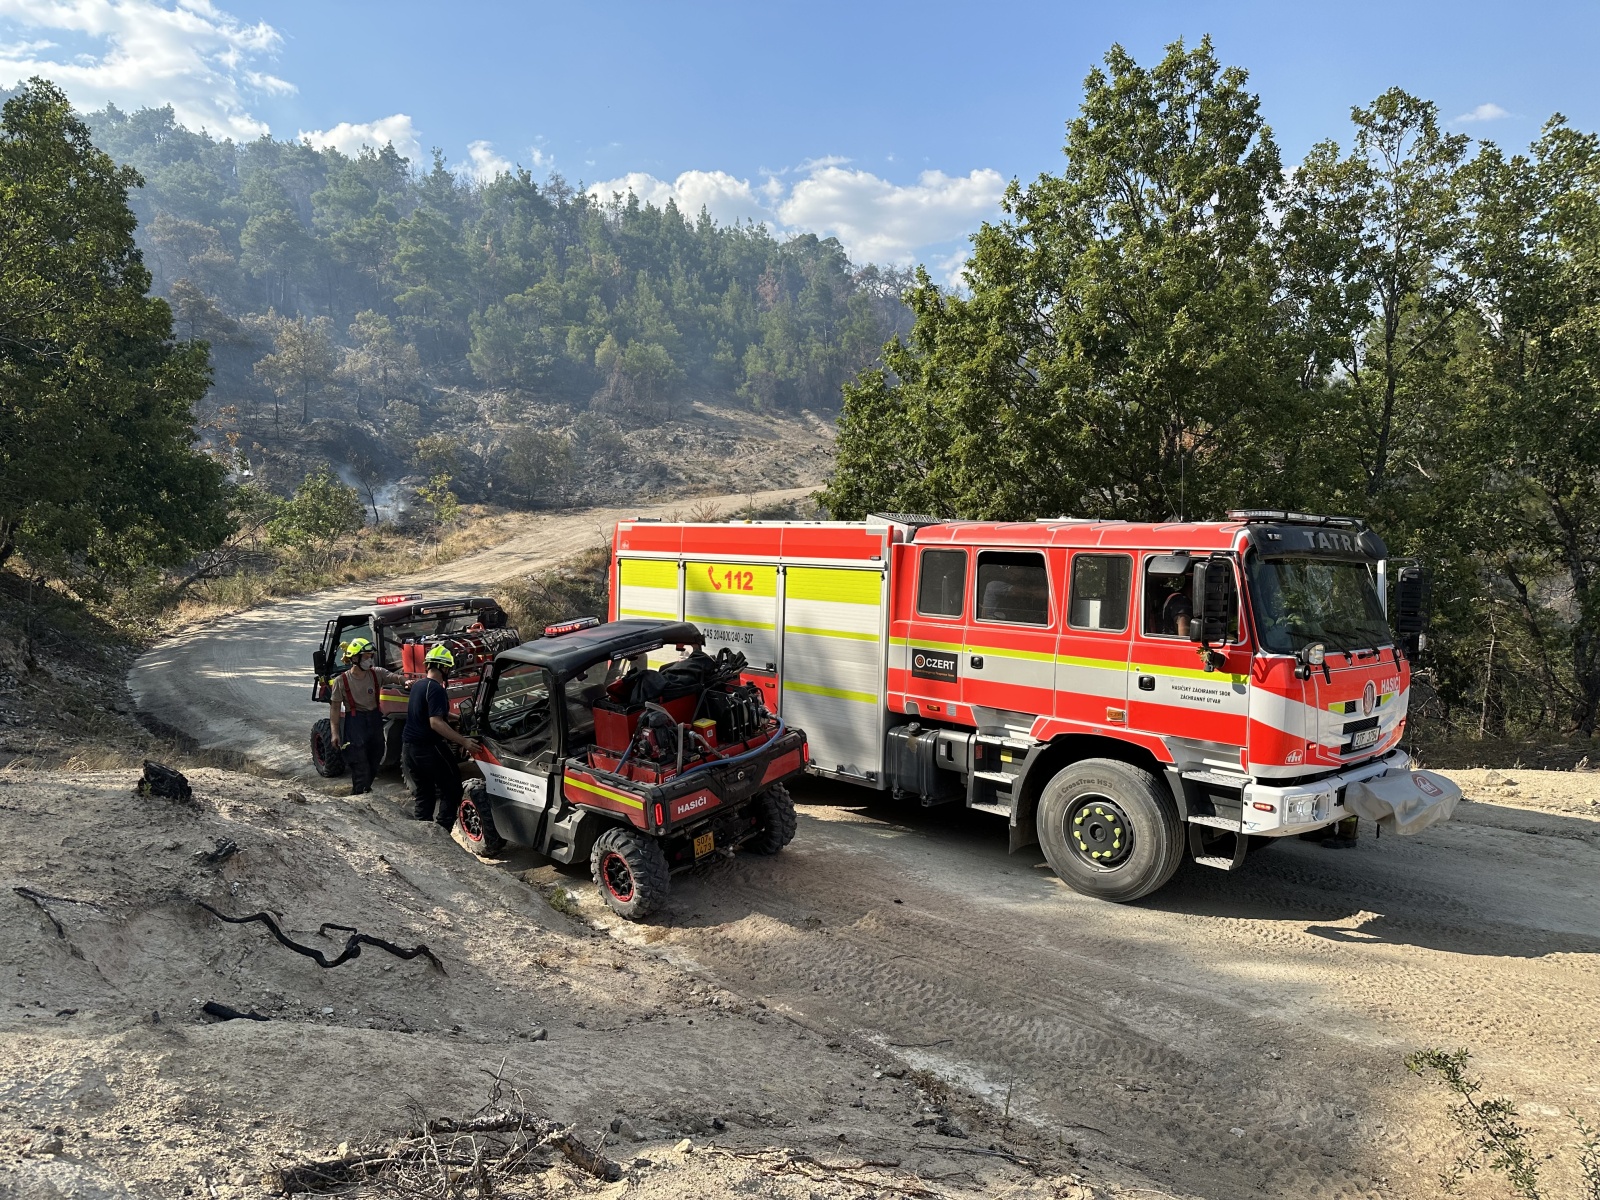 037-Pomoc českých hasičů při požárech v Řecku.JPG